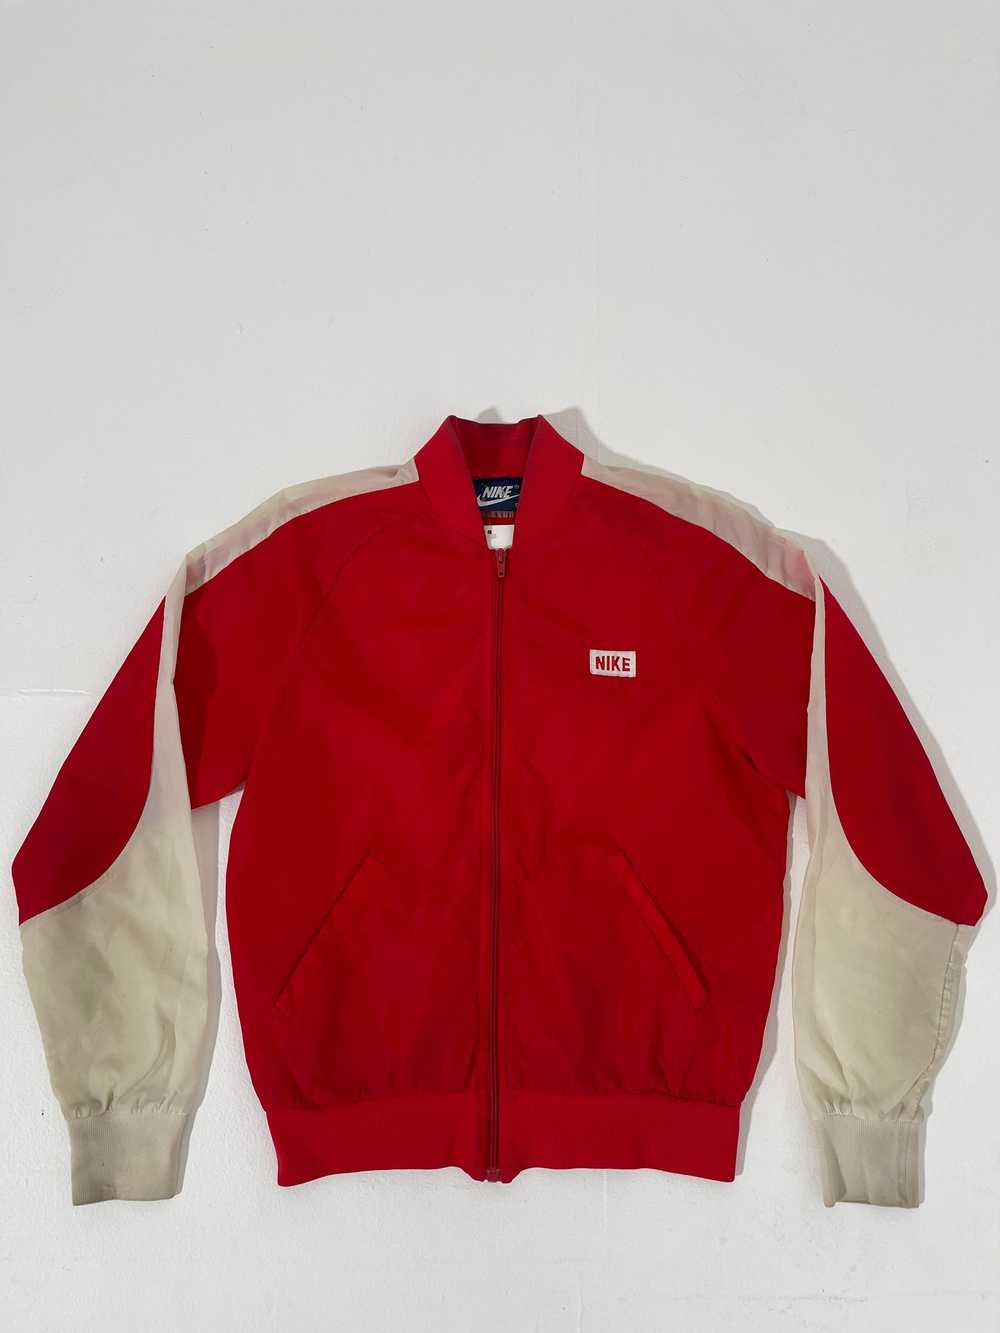 Vintage 80s Red Nike Windbreaker - image 2